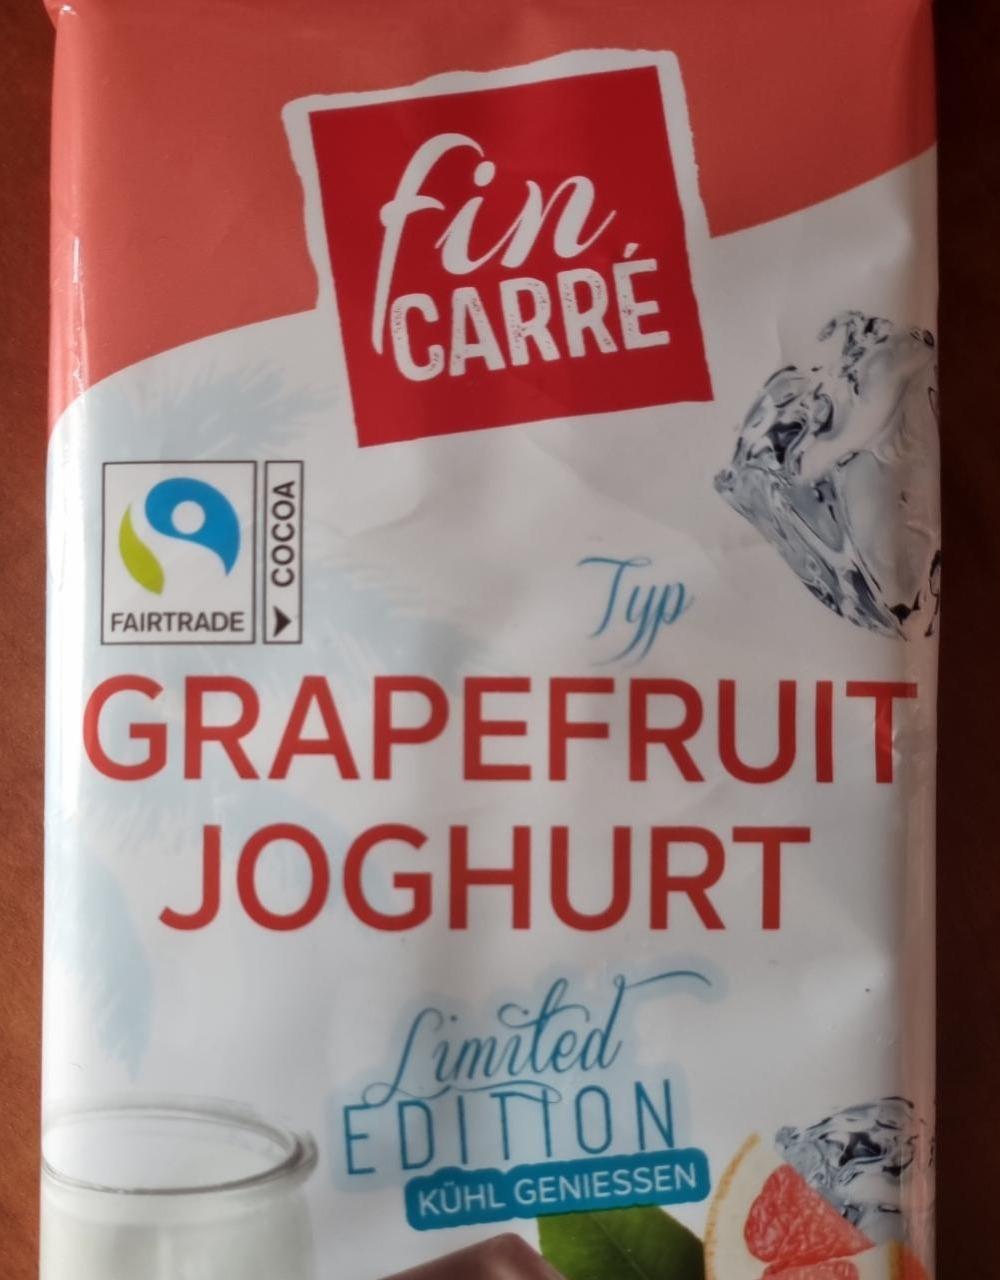 Фото - Шоколад цельномолочный со вкусом грейпфрута и йогурта Альпийский Grapefruit Joghurt Fin Carré